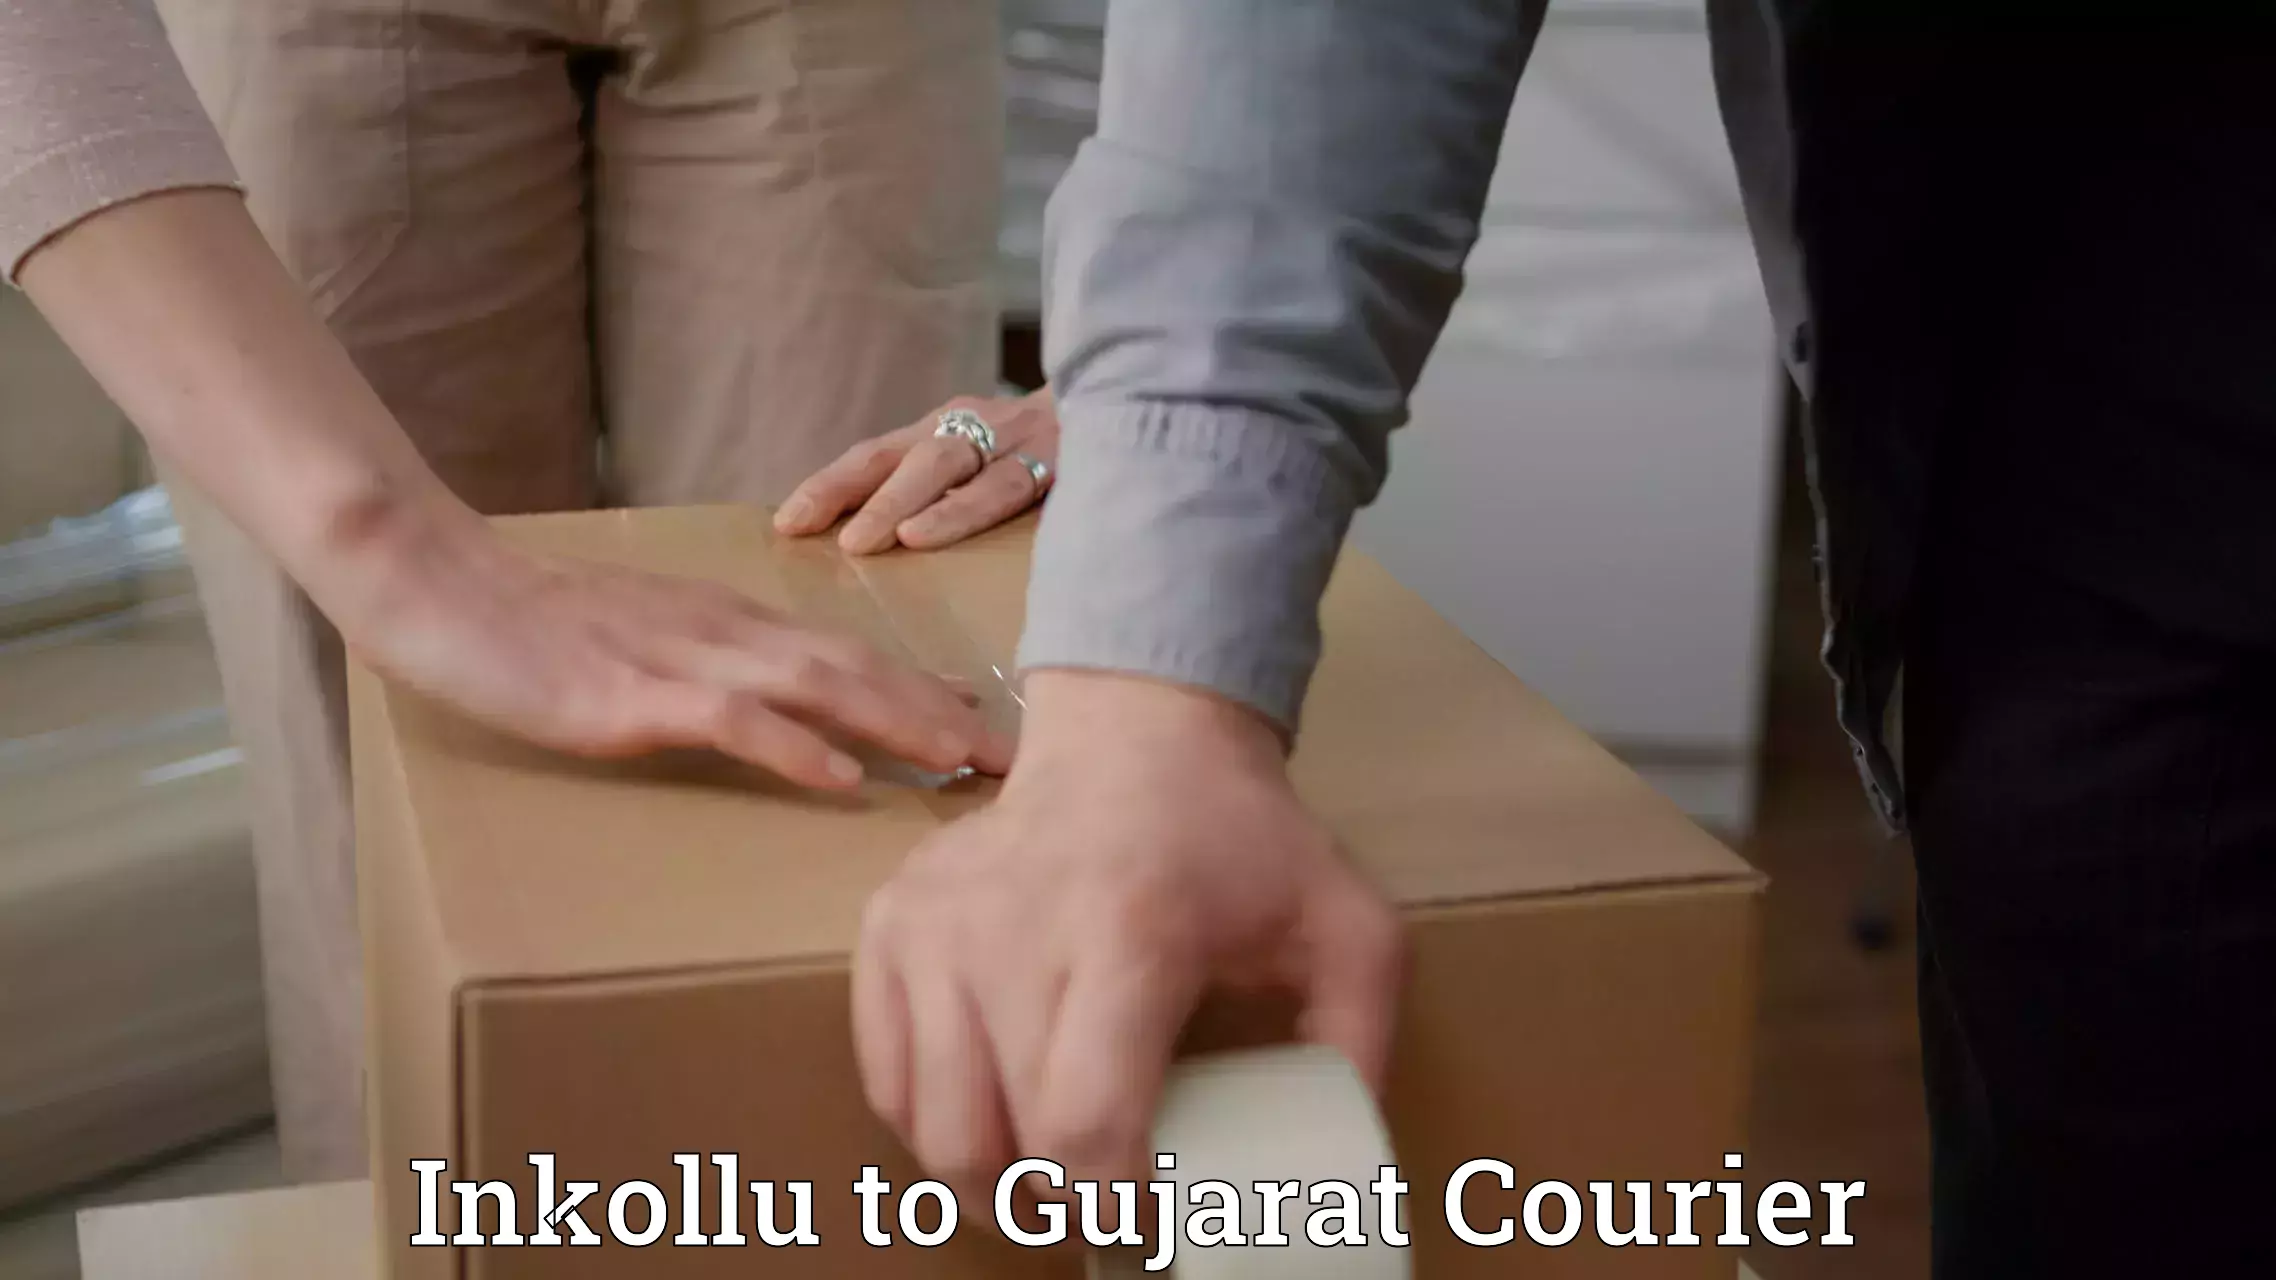 User-friendly courier app Inkollu to Gujarat